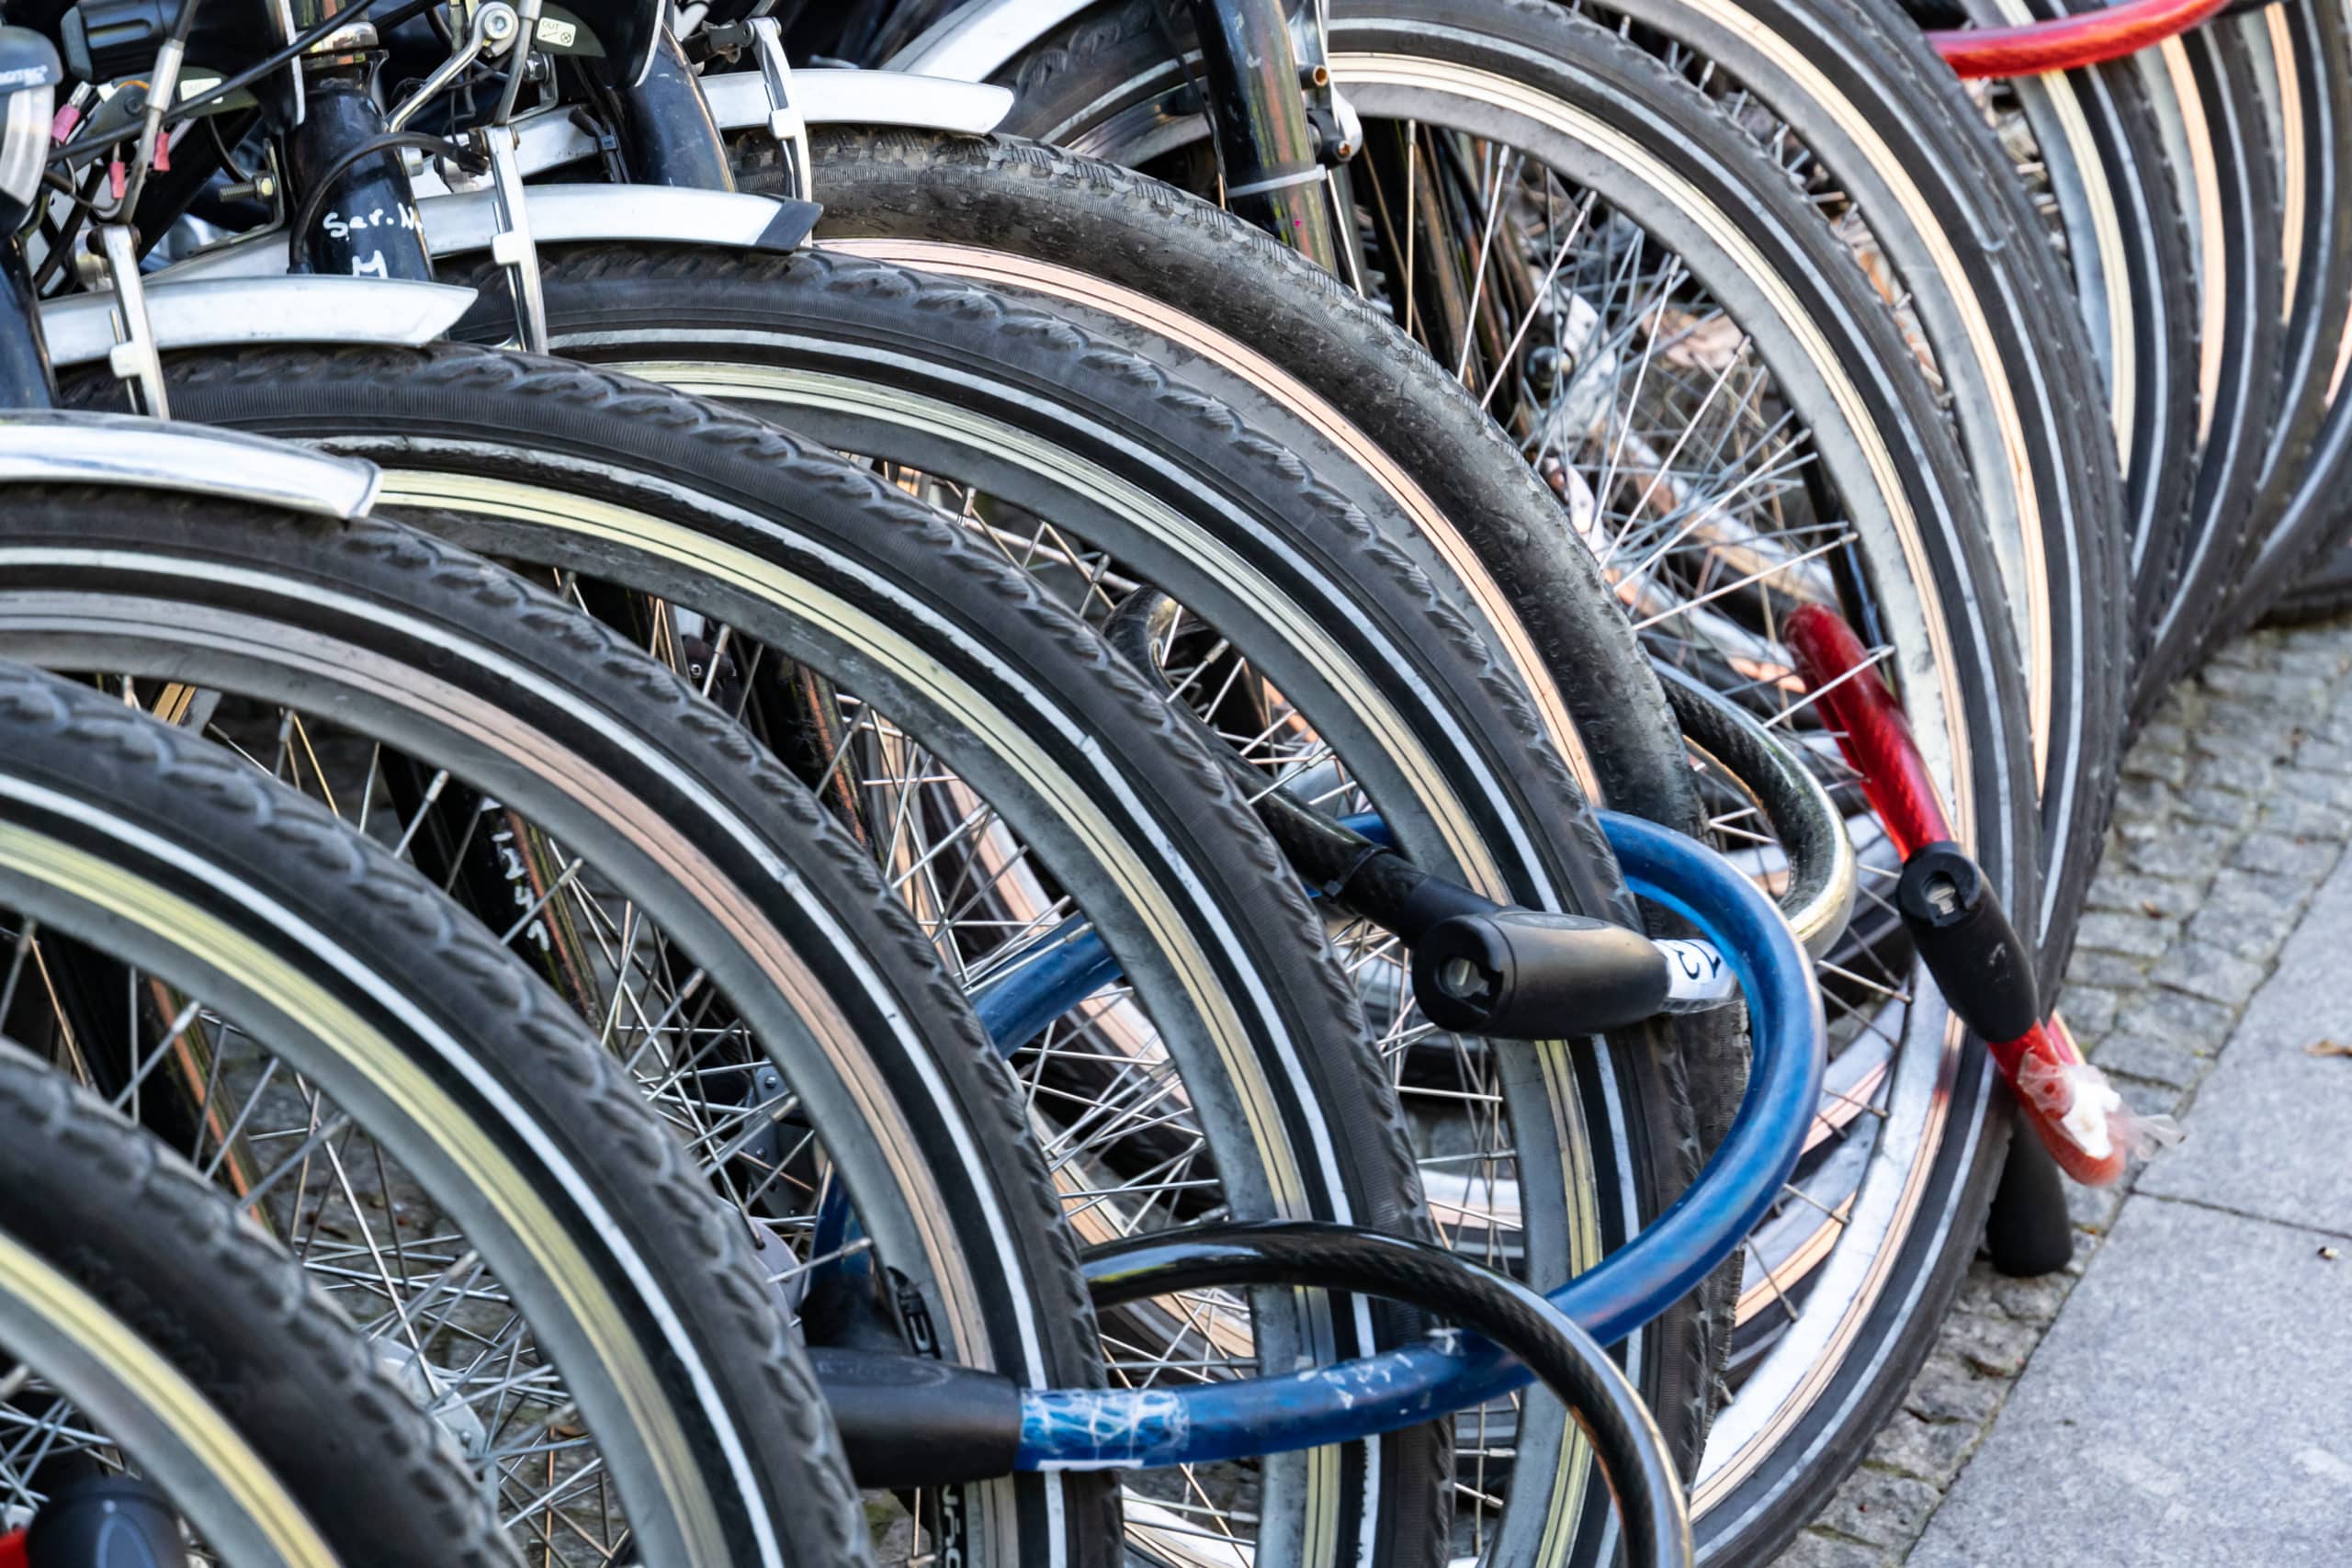 Comment Choisir Un Antivol Pour Vélo Electrique ? Nos Conseils